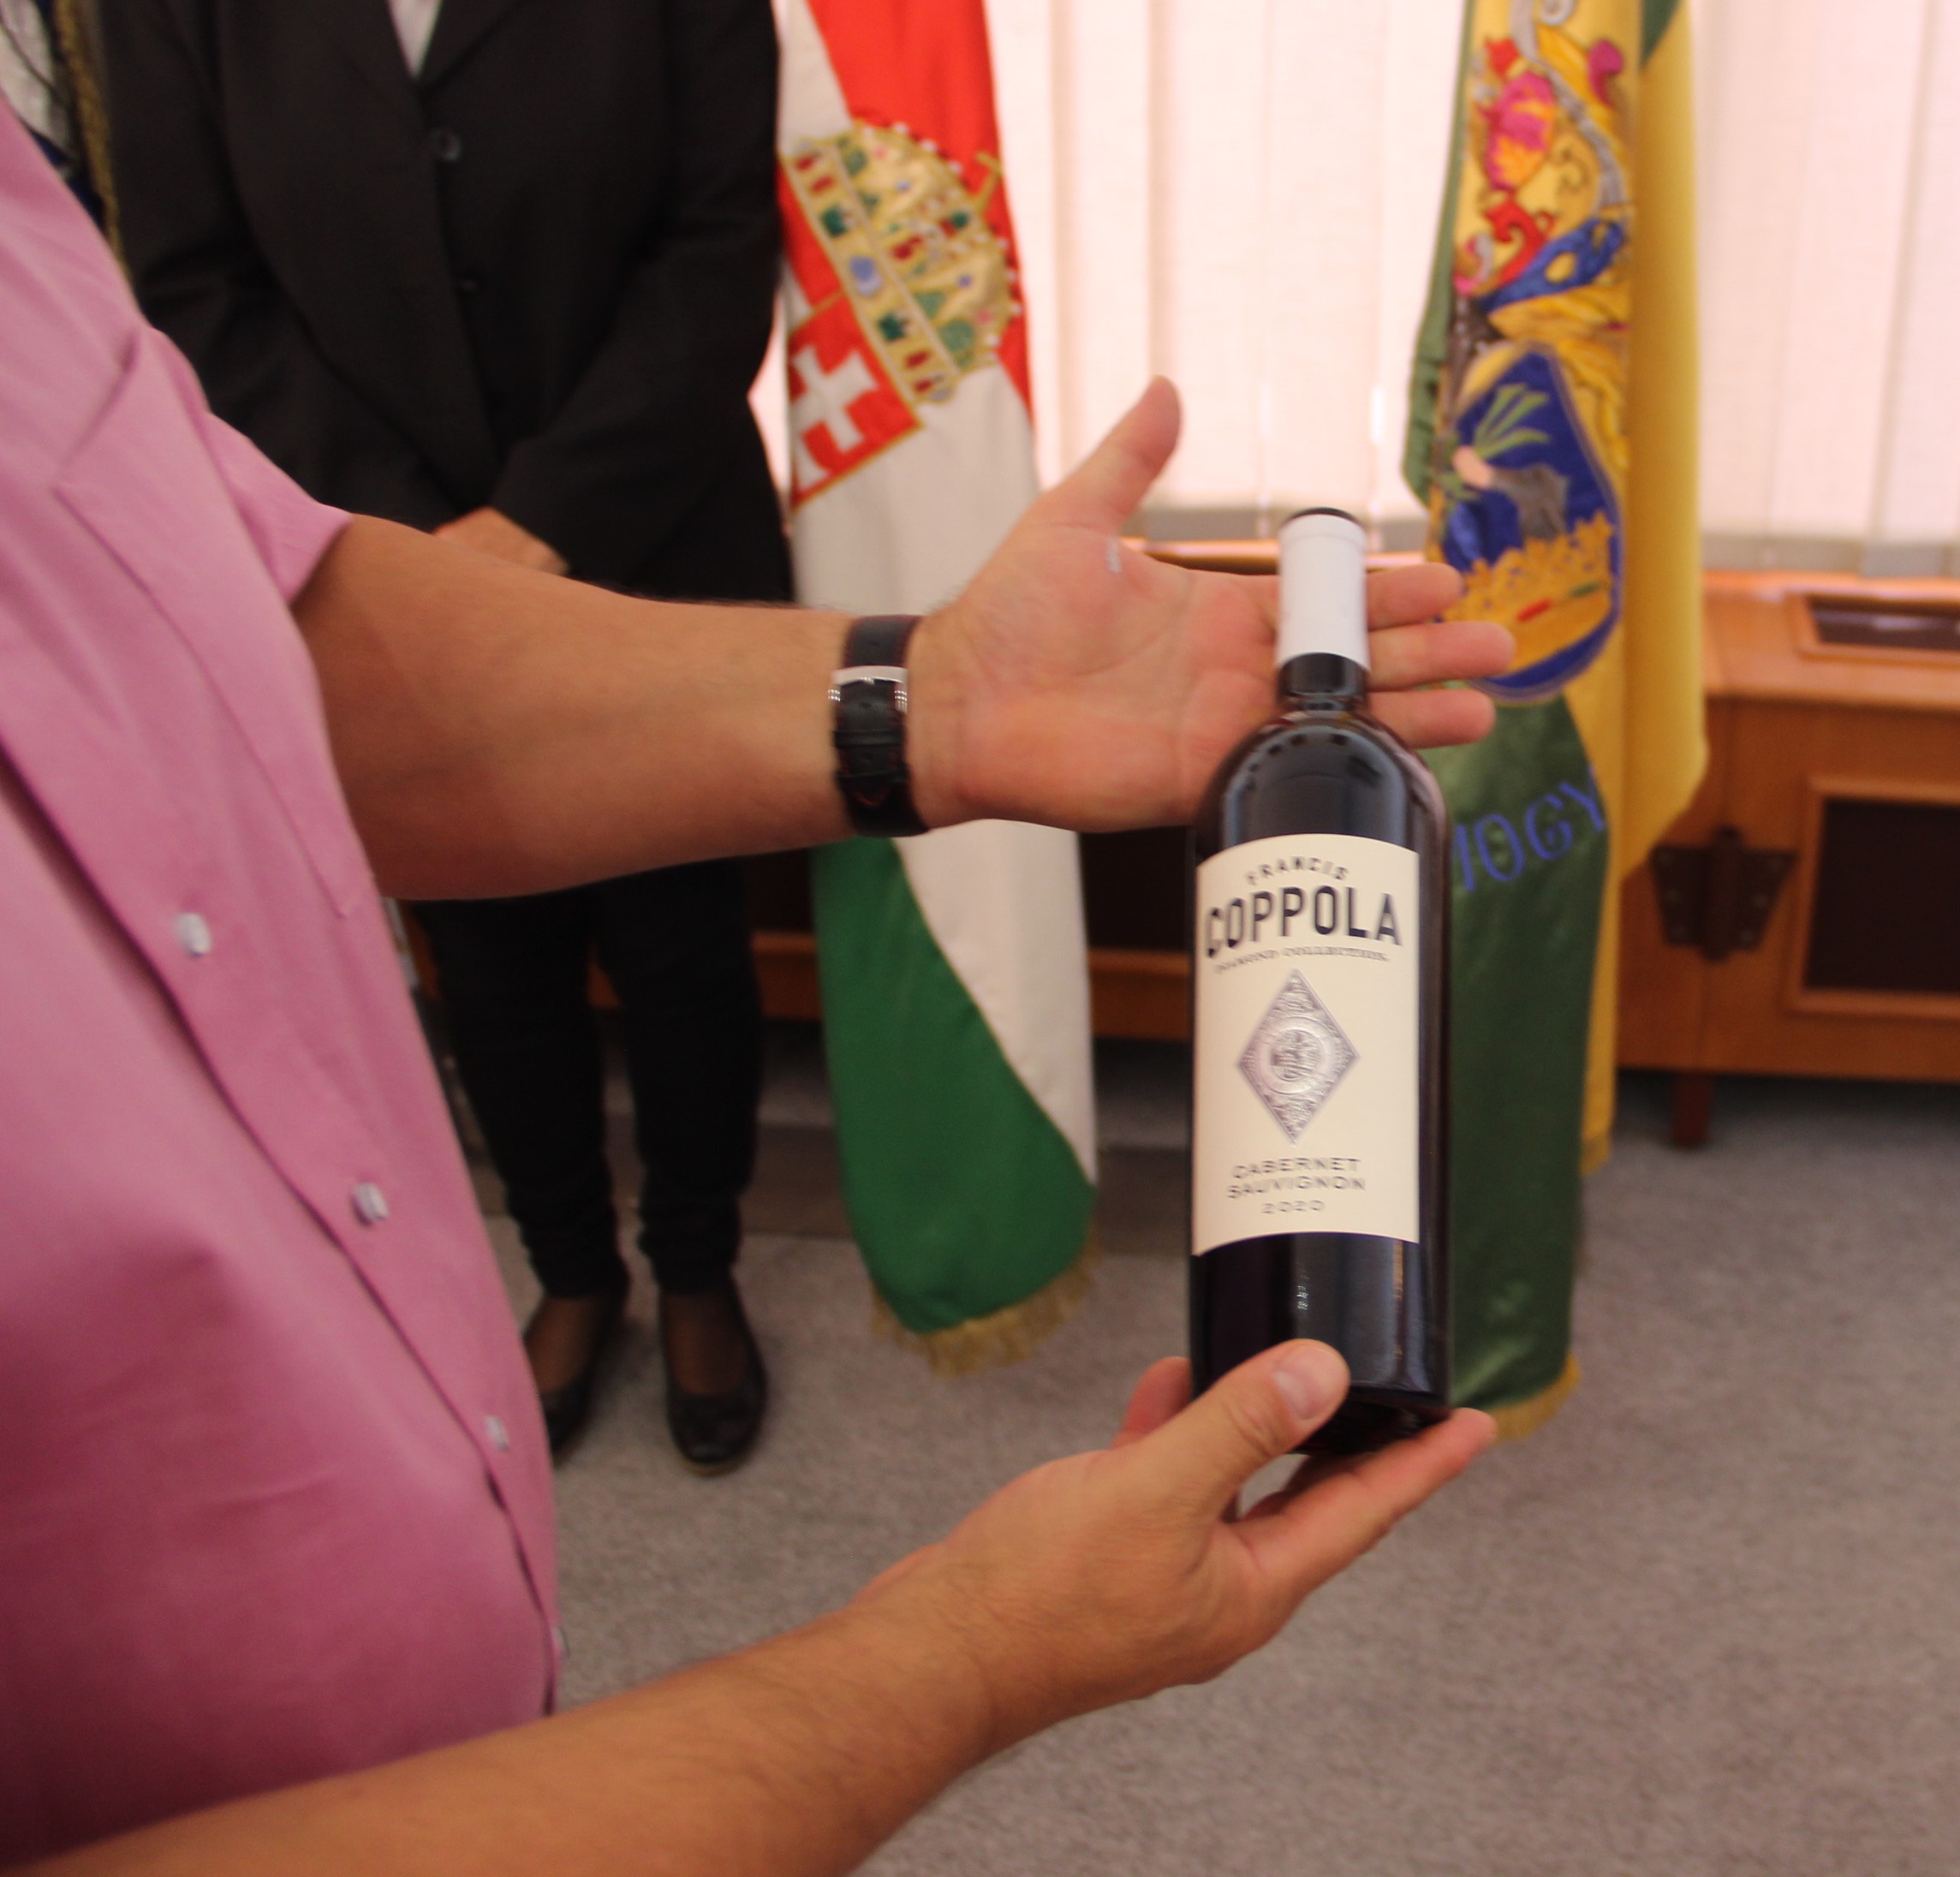 Coppola borát hozták az amerikai cserediákok